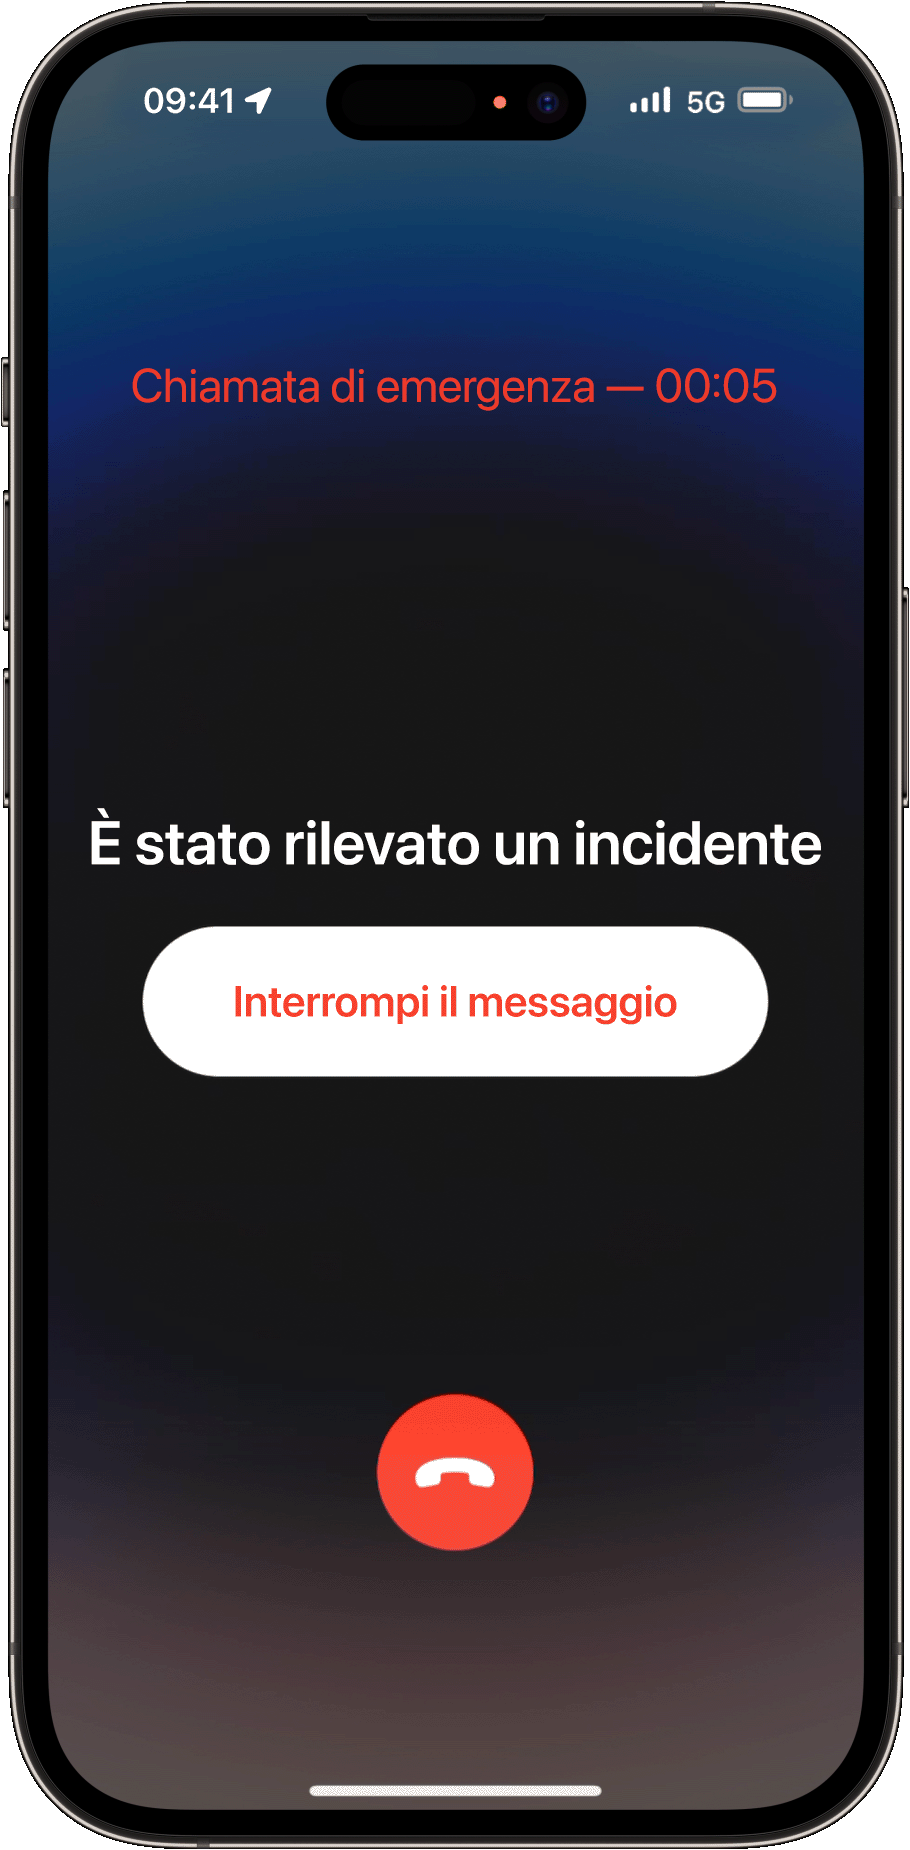 Quando non rispondi, l'iPhone contatta i servizi di emergenza e riproduce un messaggio registrato